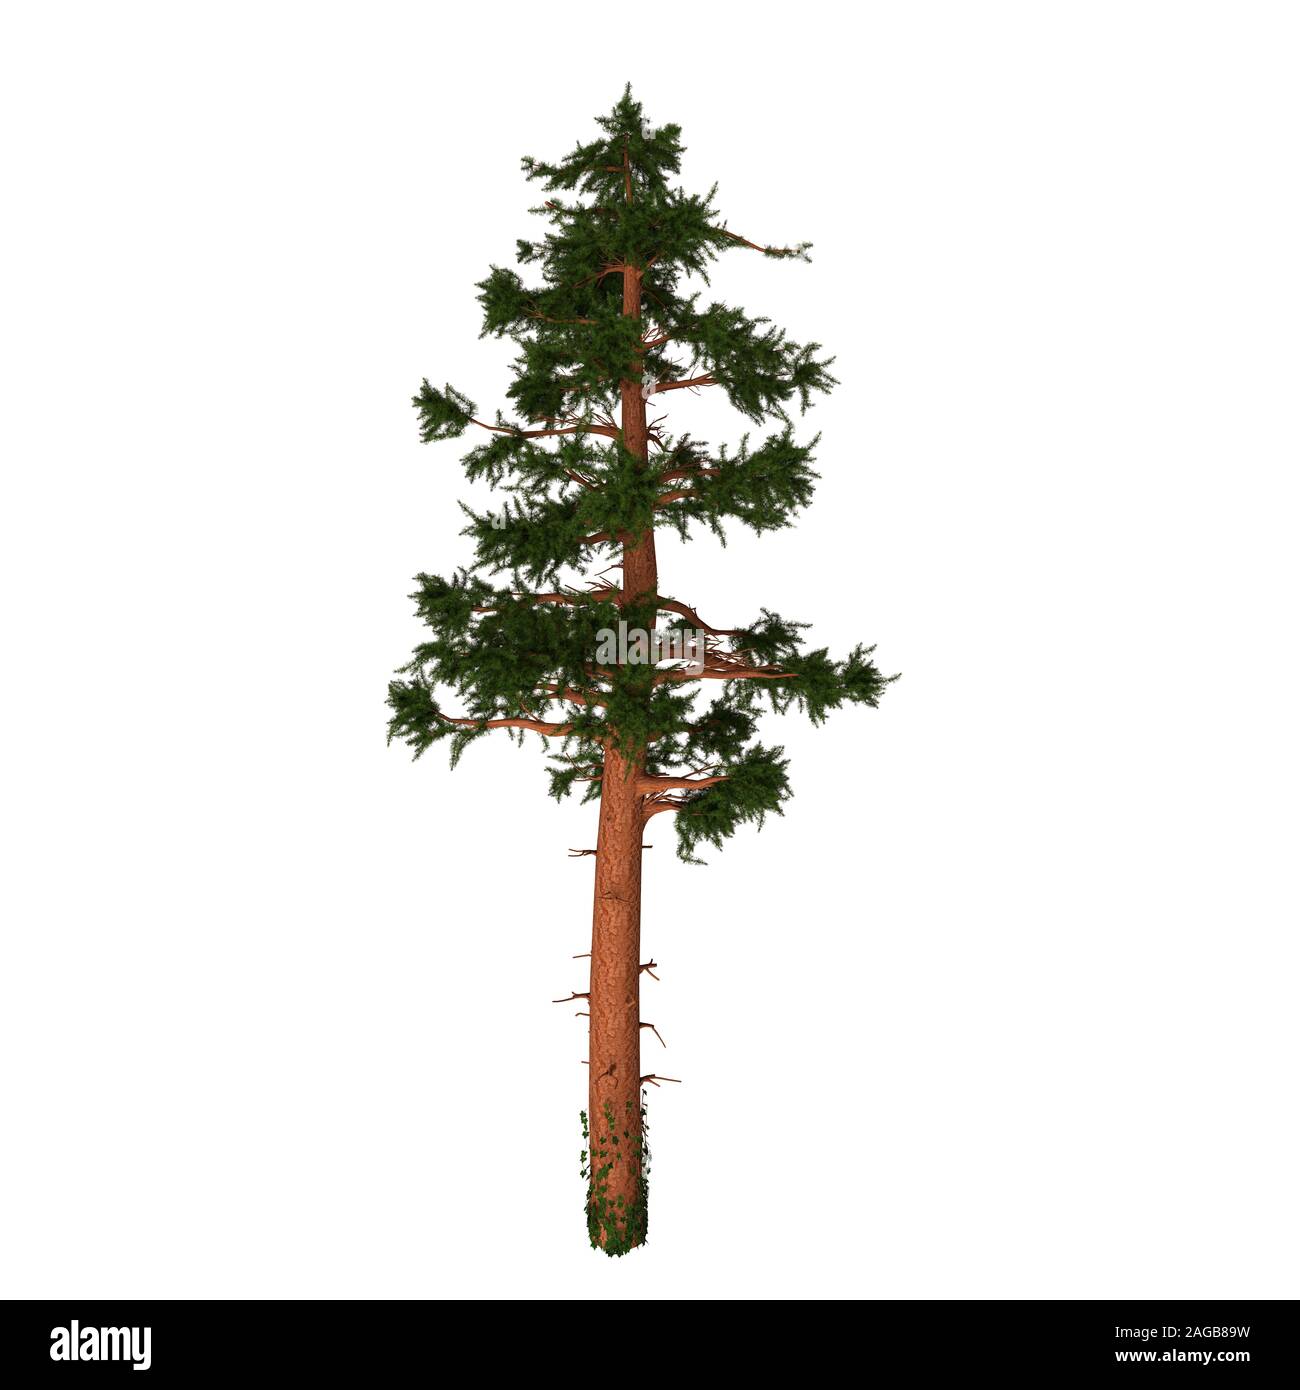 Die Kalifornien Rote Tanne oder Silvertip ist eine immergrüne Koniferen Pine Tree in Oregon und Kalifornien in Nordamerika. Stockfoto